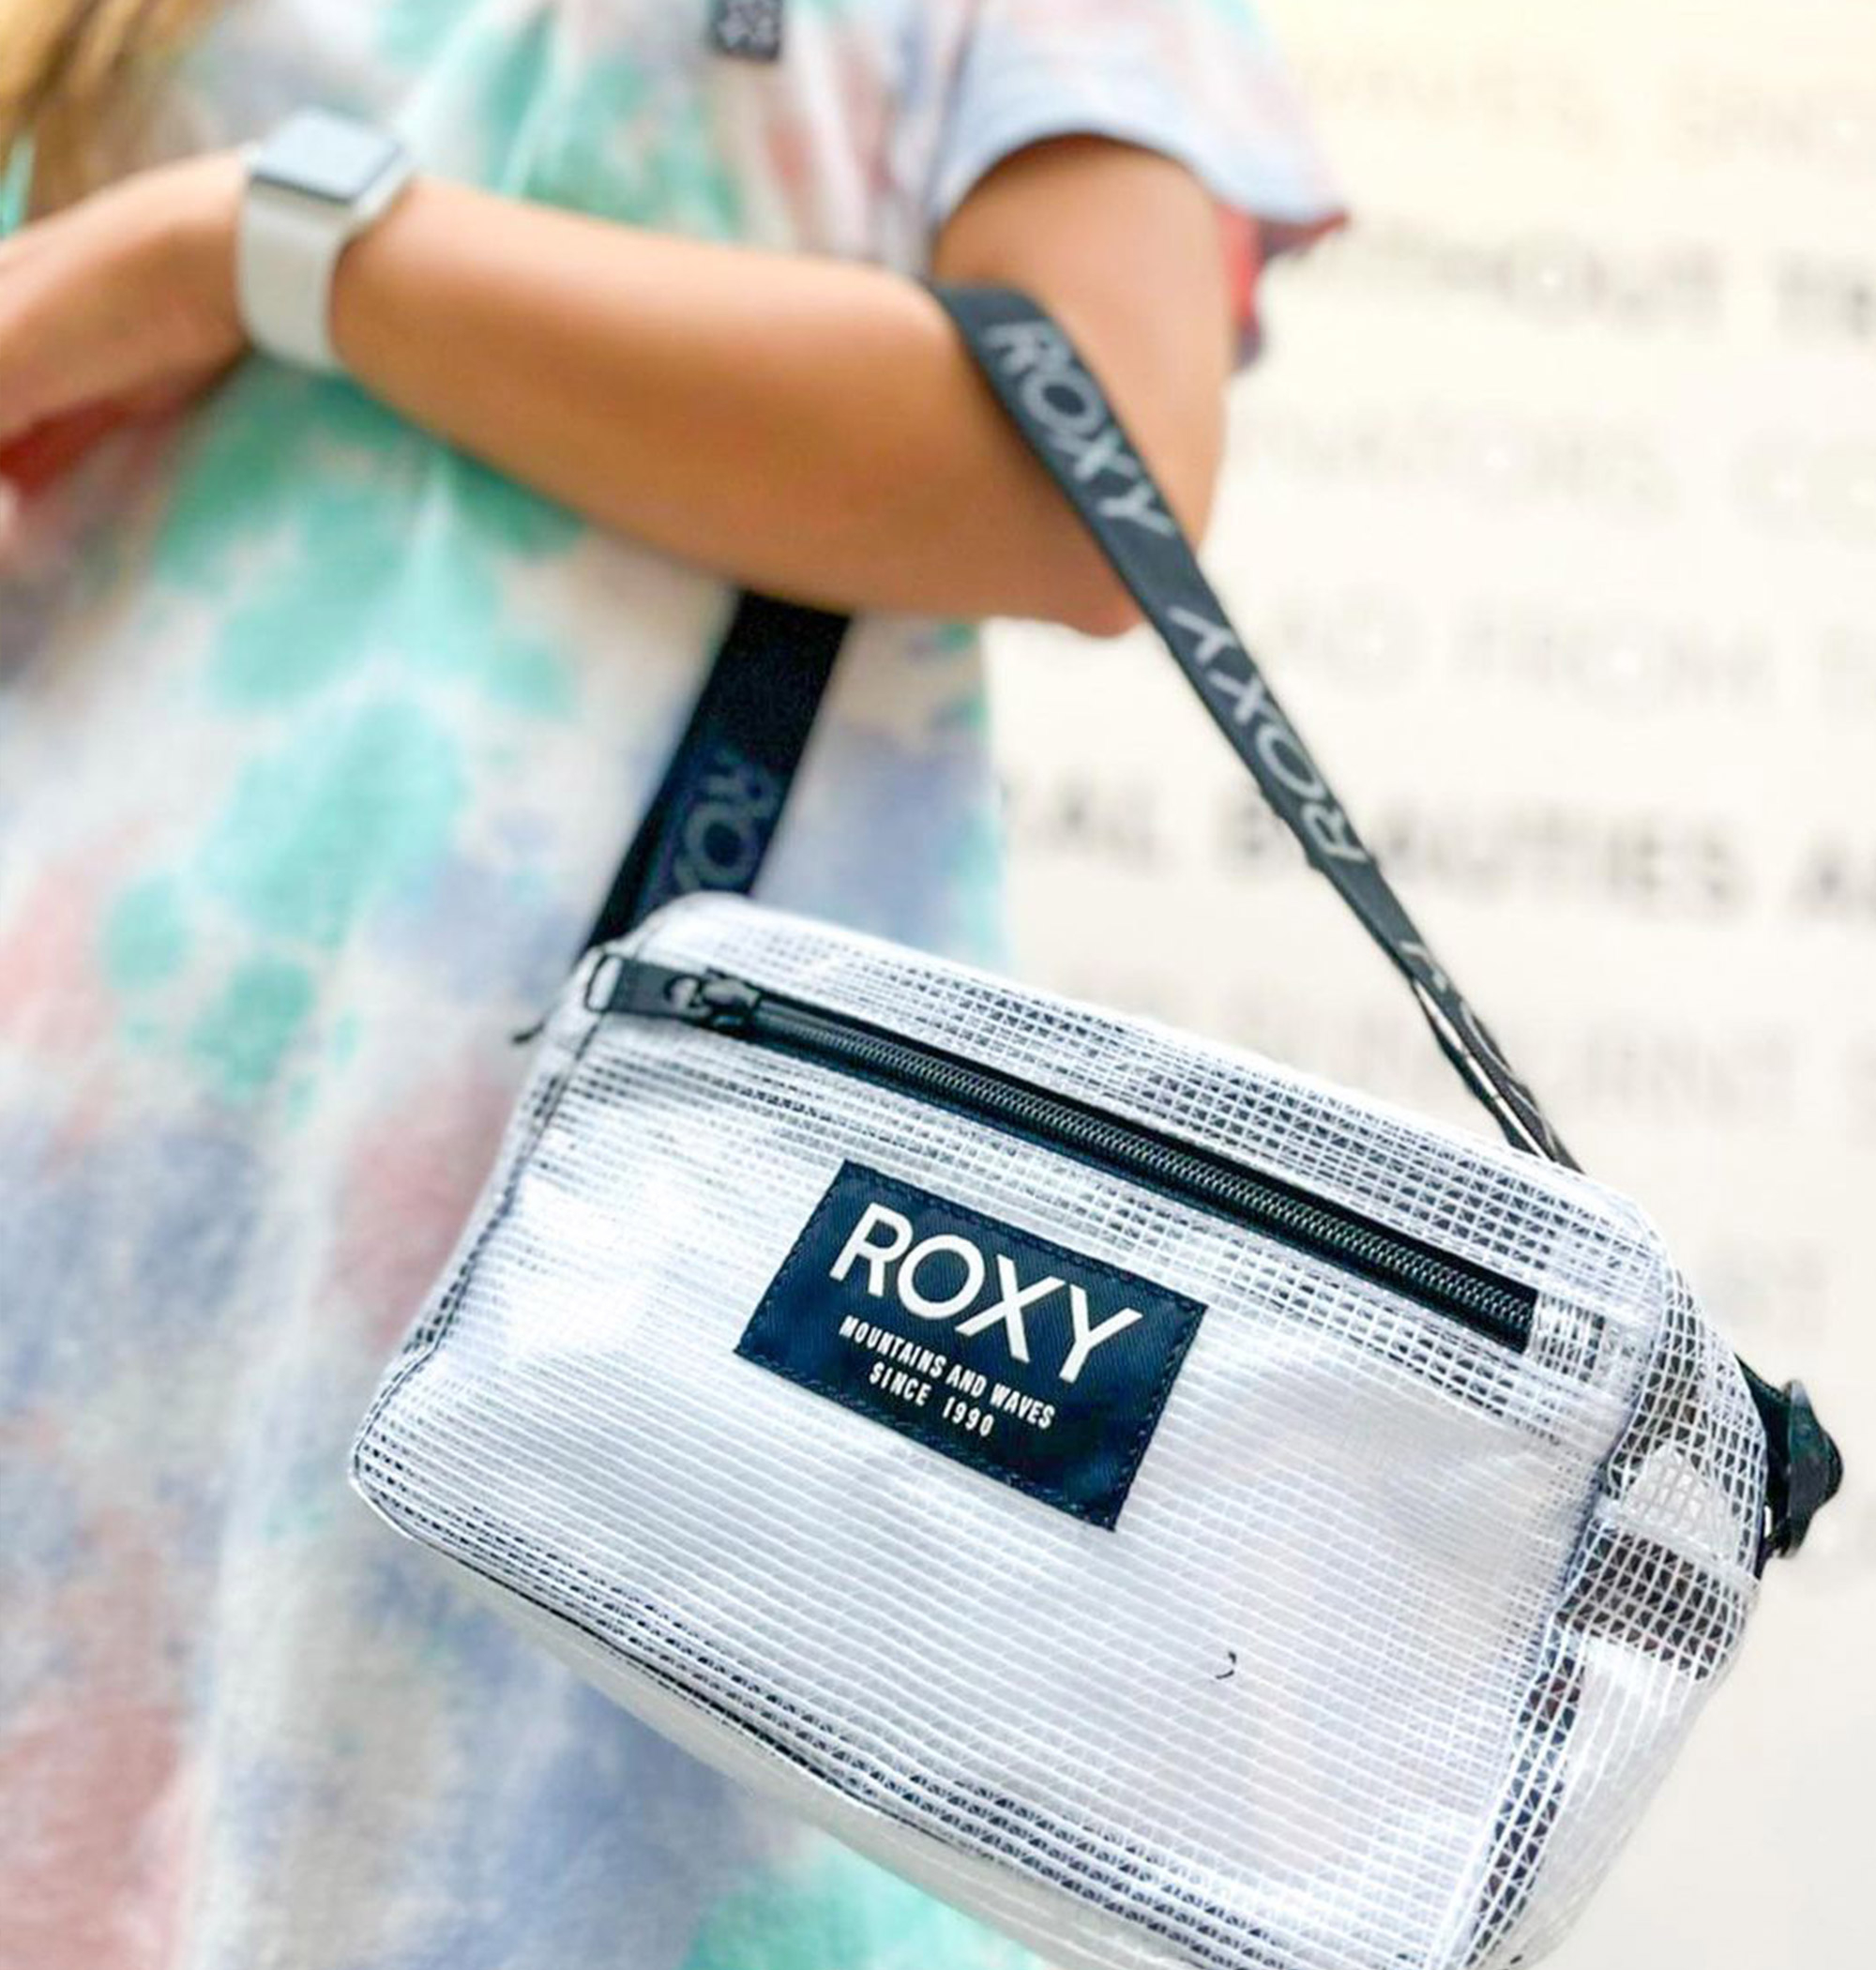 ＜Roxy＞IN THE ACT 透明感が夏らしいボックス型のミニバッグが登場